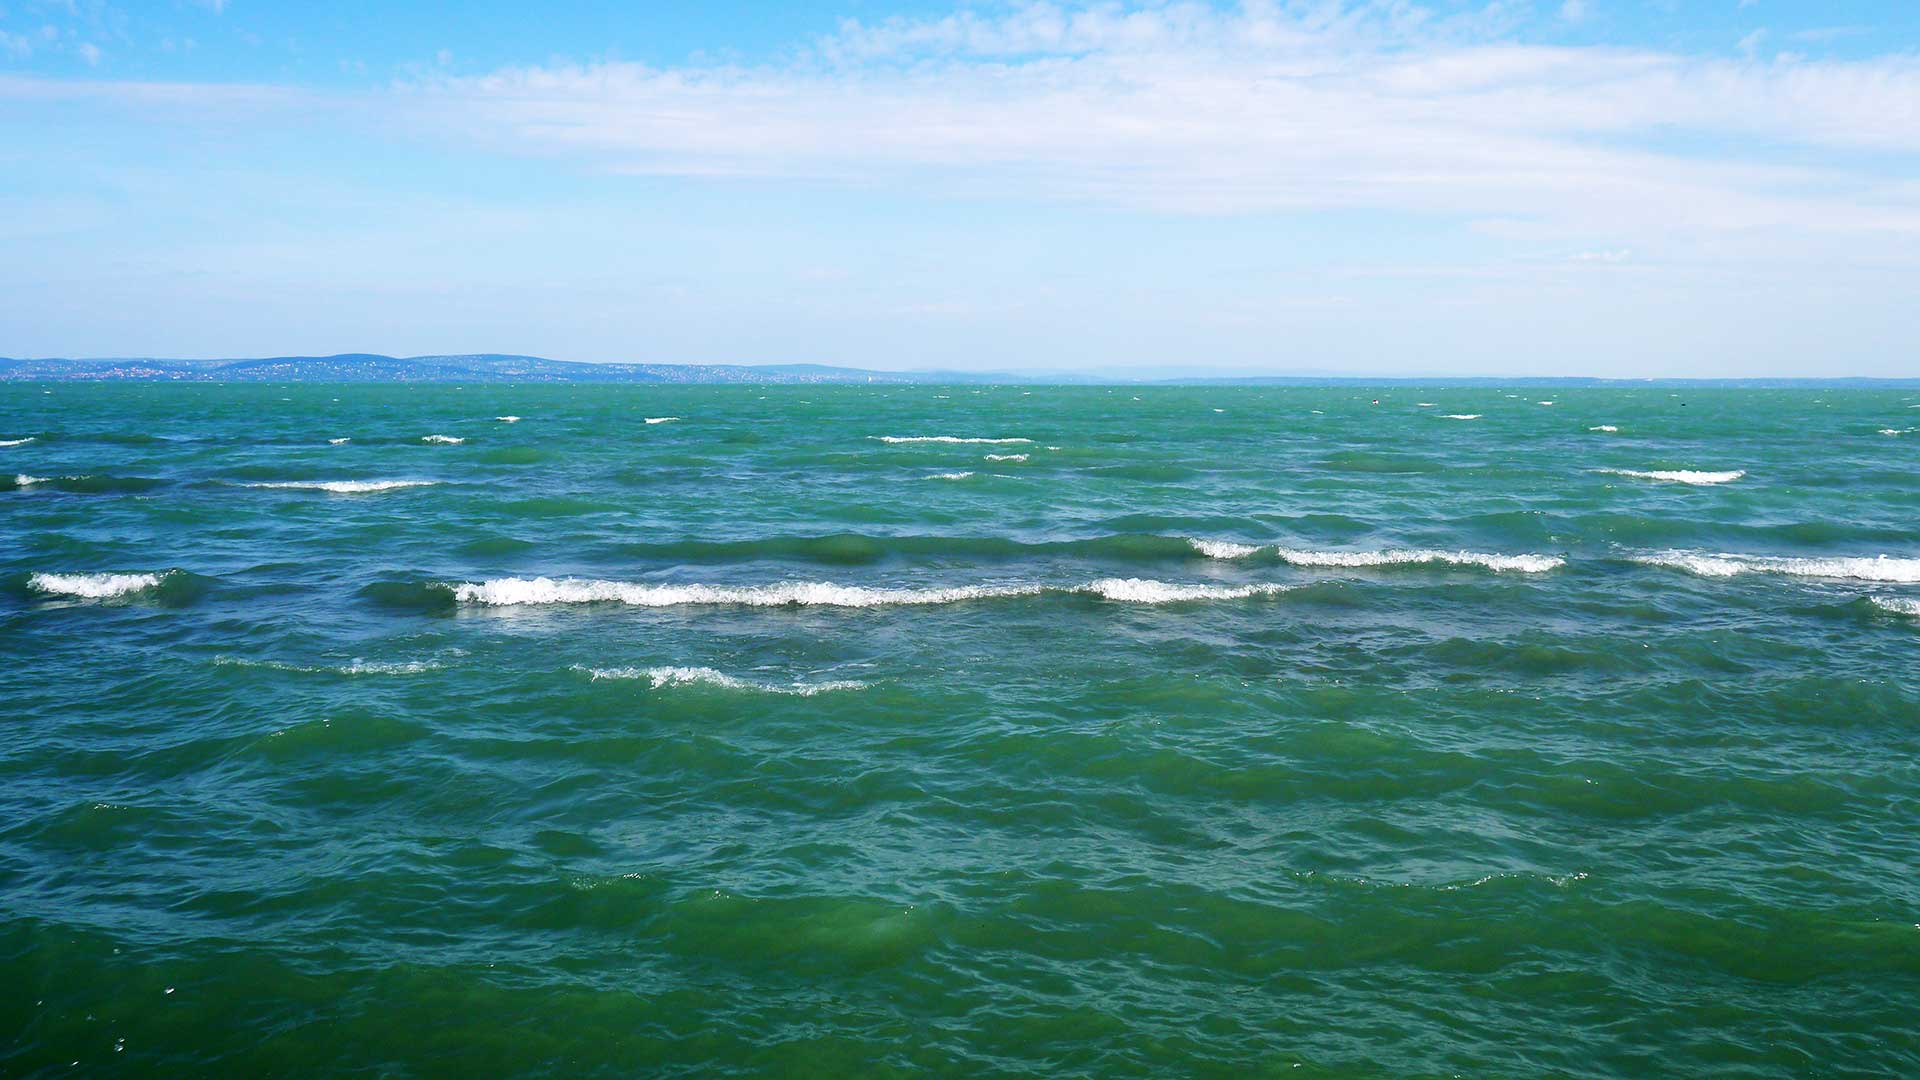 Szép látvány a Balaton fehér tarajos (bukó) hullámai a kék vízen